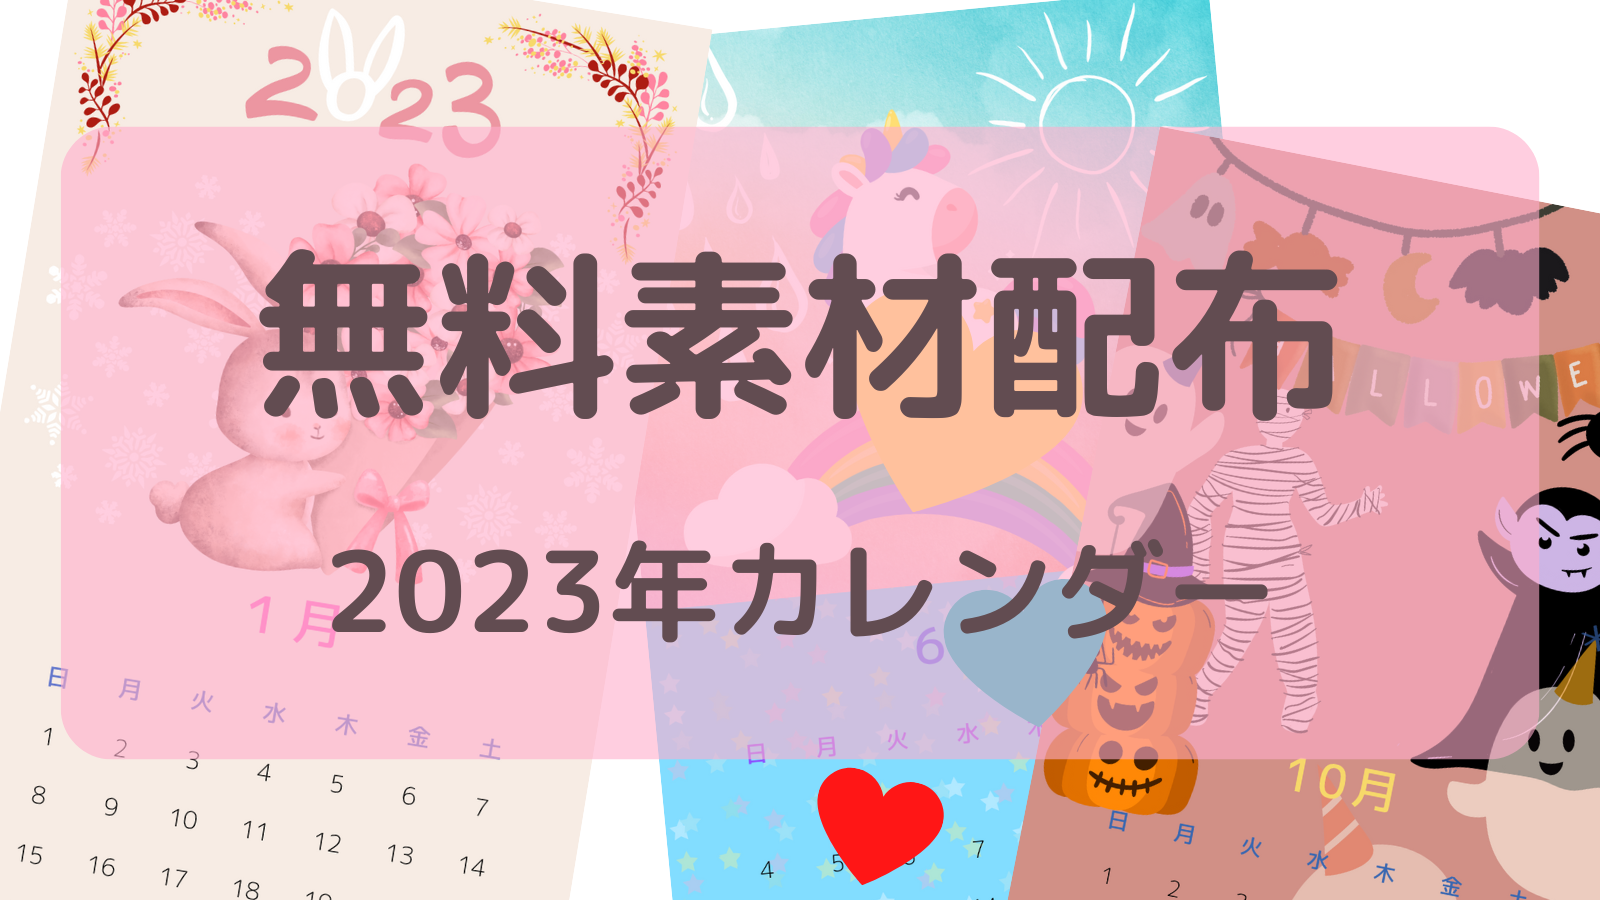 13周年記念イベントが 野村証券 2023年 カレンダー seedpotatoes.com.au